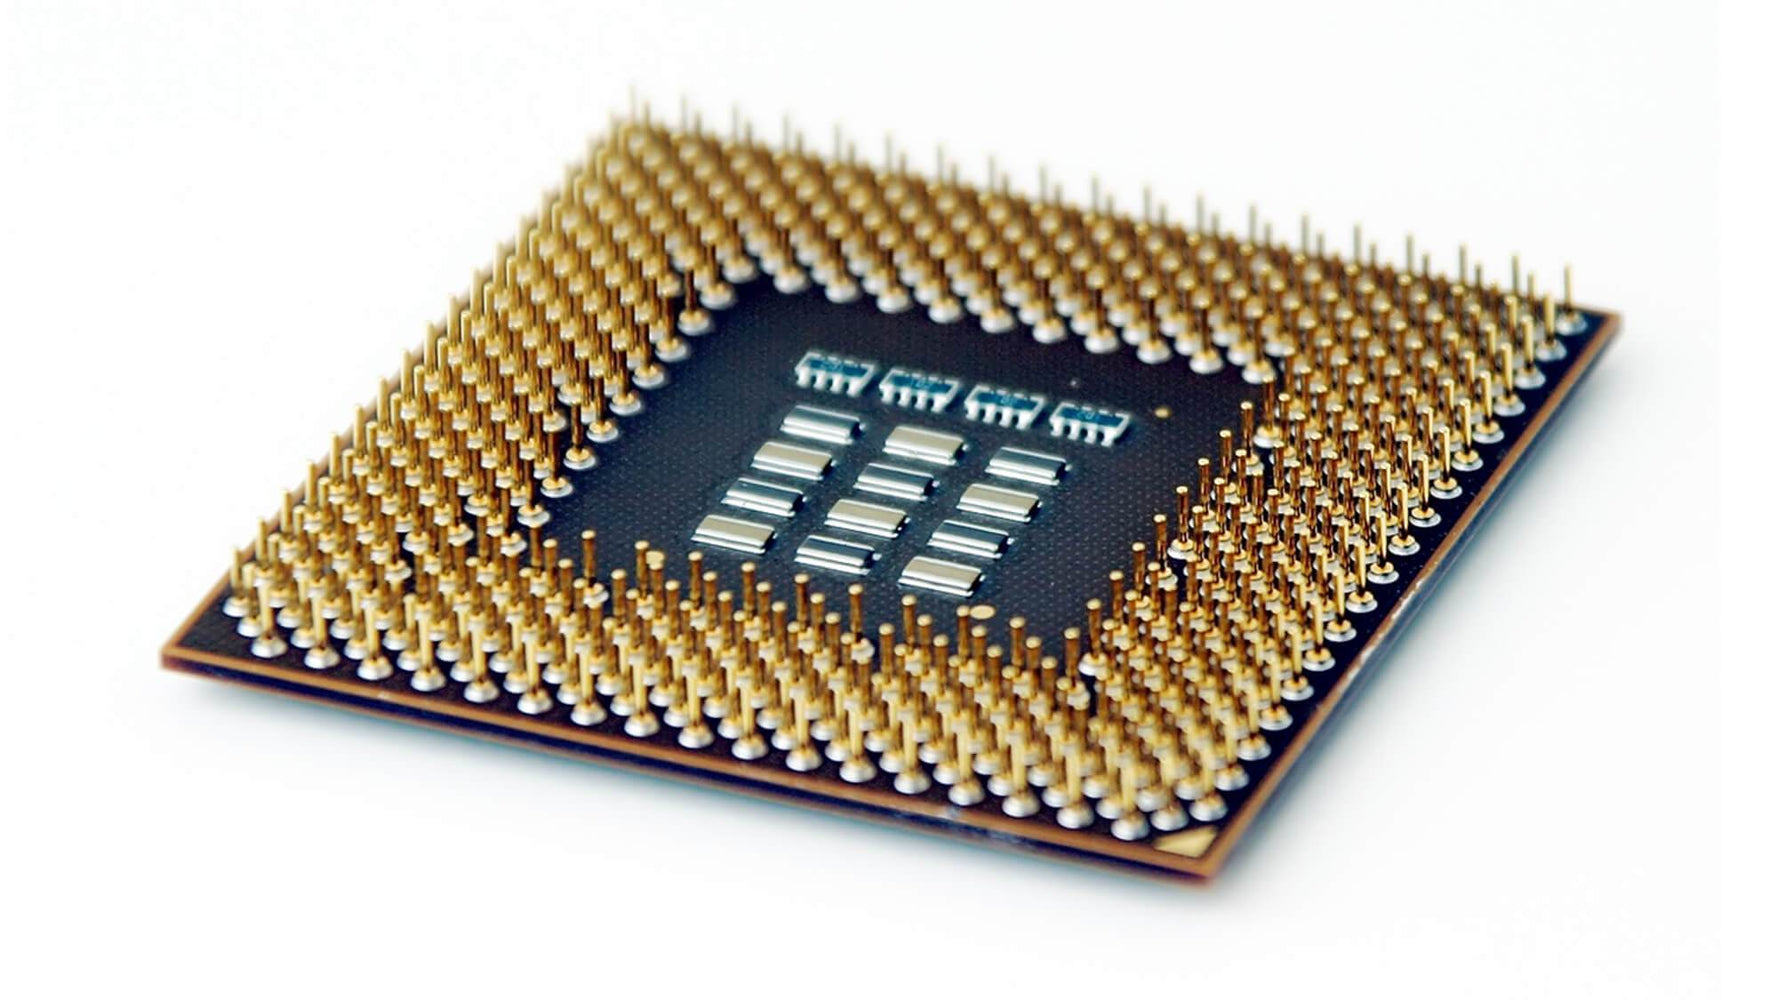 BX80614X5670 - Intel Xeon X5670 6 Core 2.93GHz 1.5MB L2 Cache 12MB L3 Cache 6.4GT/s QPI Speed Socket FCLGA1366 32NM 95W Processor